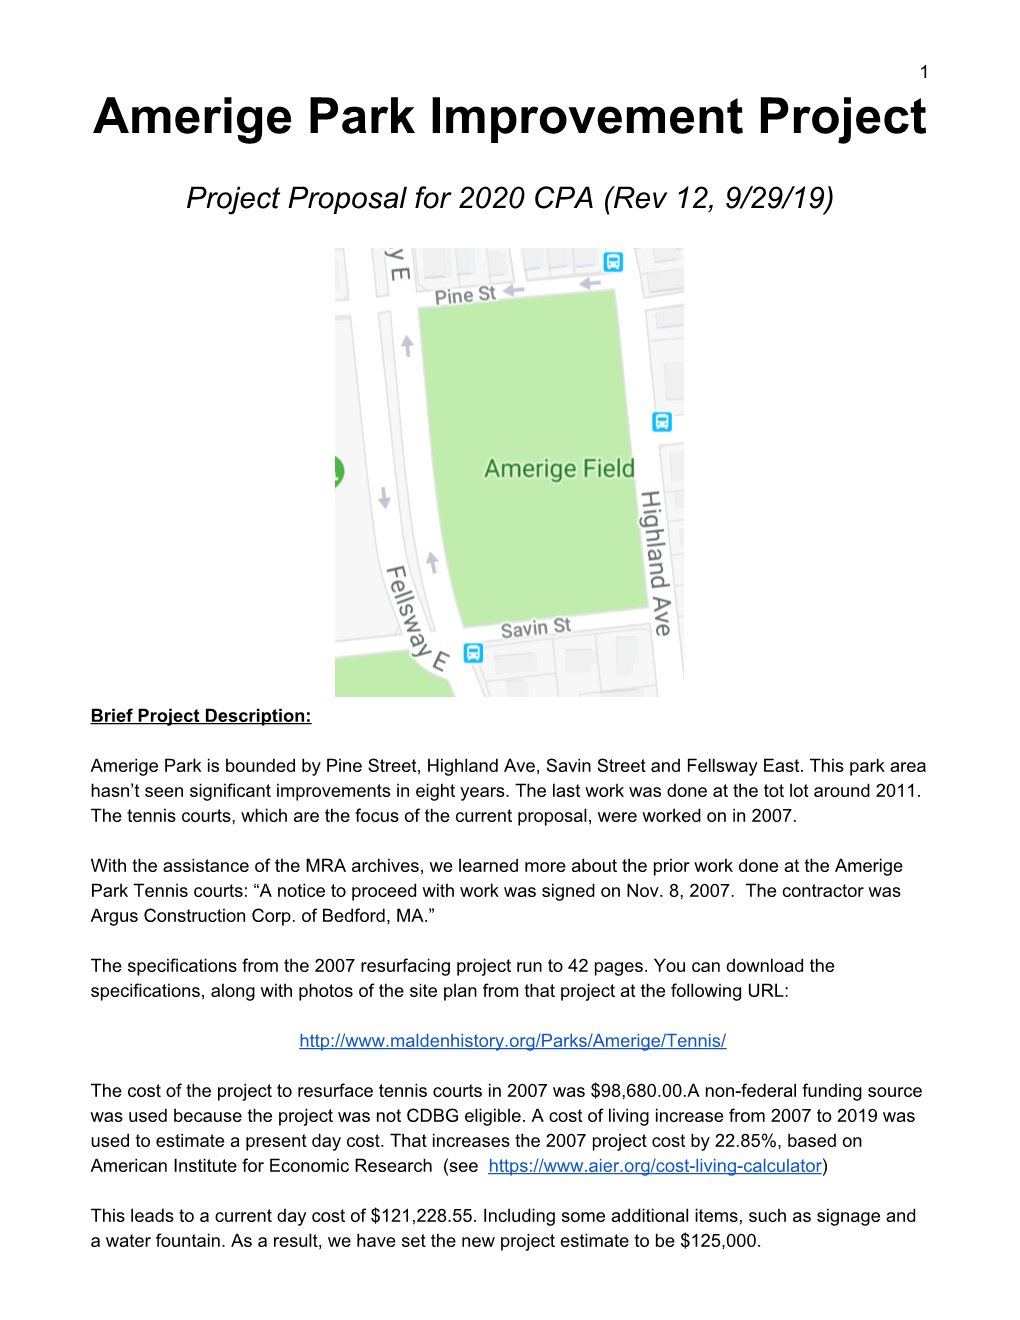 Amerige Park Improvement Project